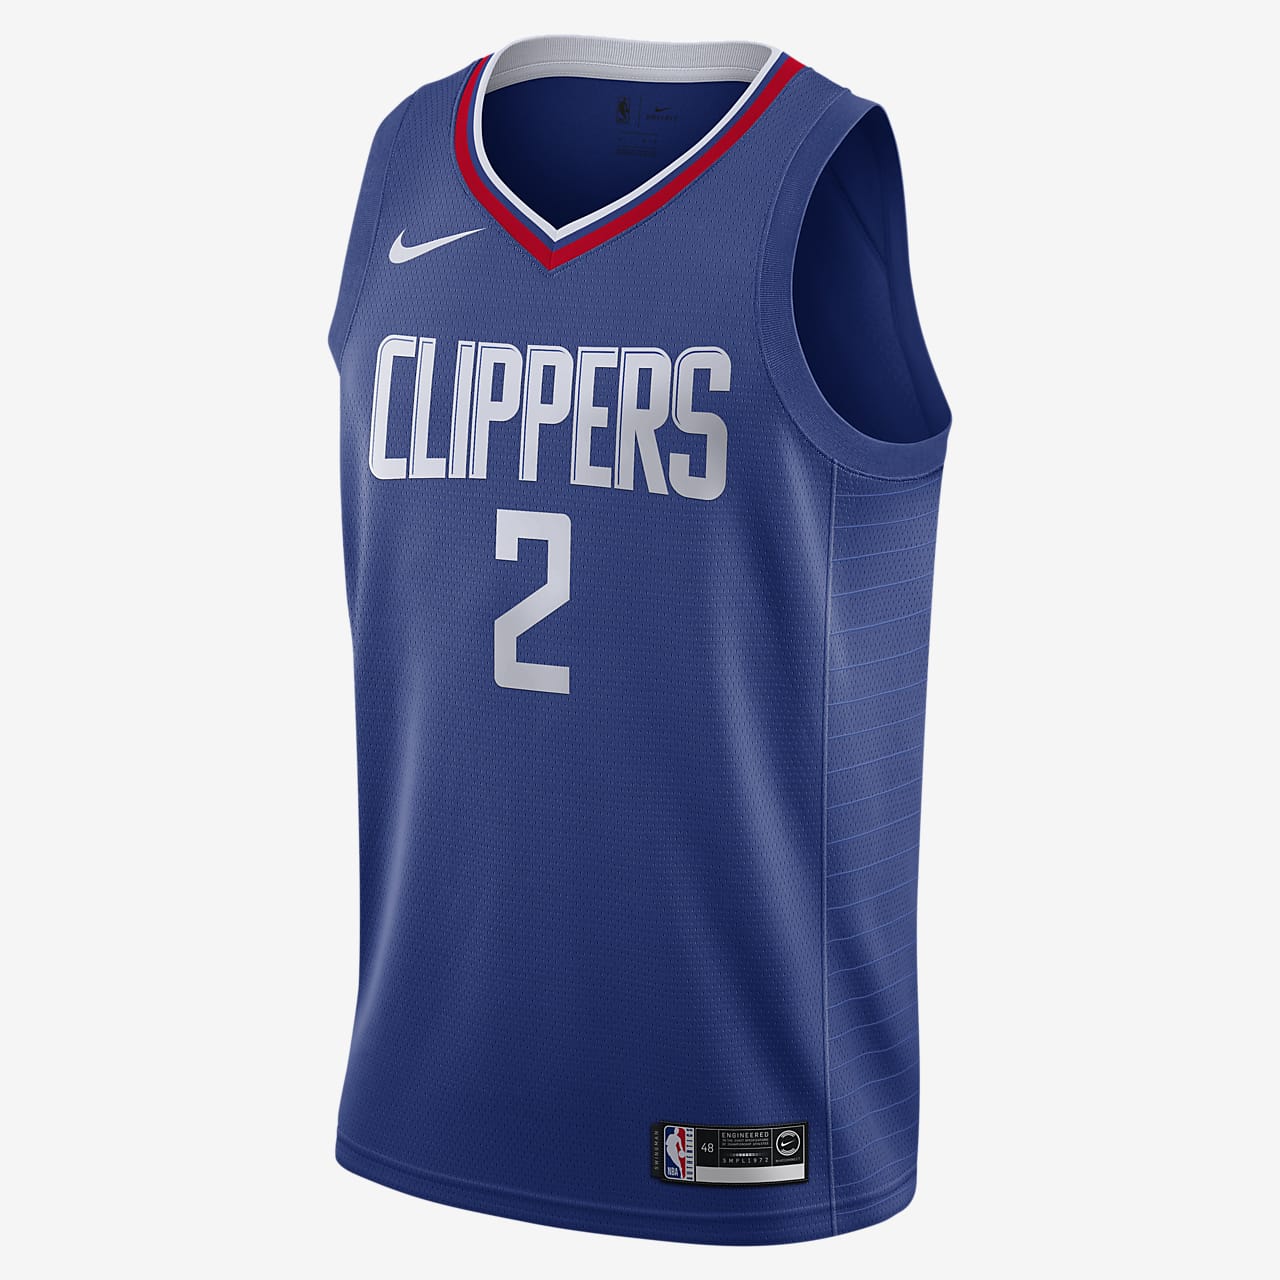 Kawhi Leonard Clippers Icon Edition Nike NBA Swingman Jersey